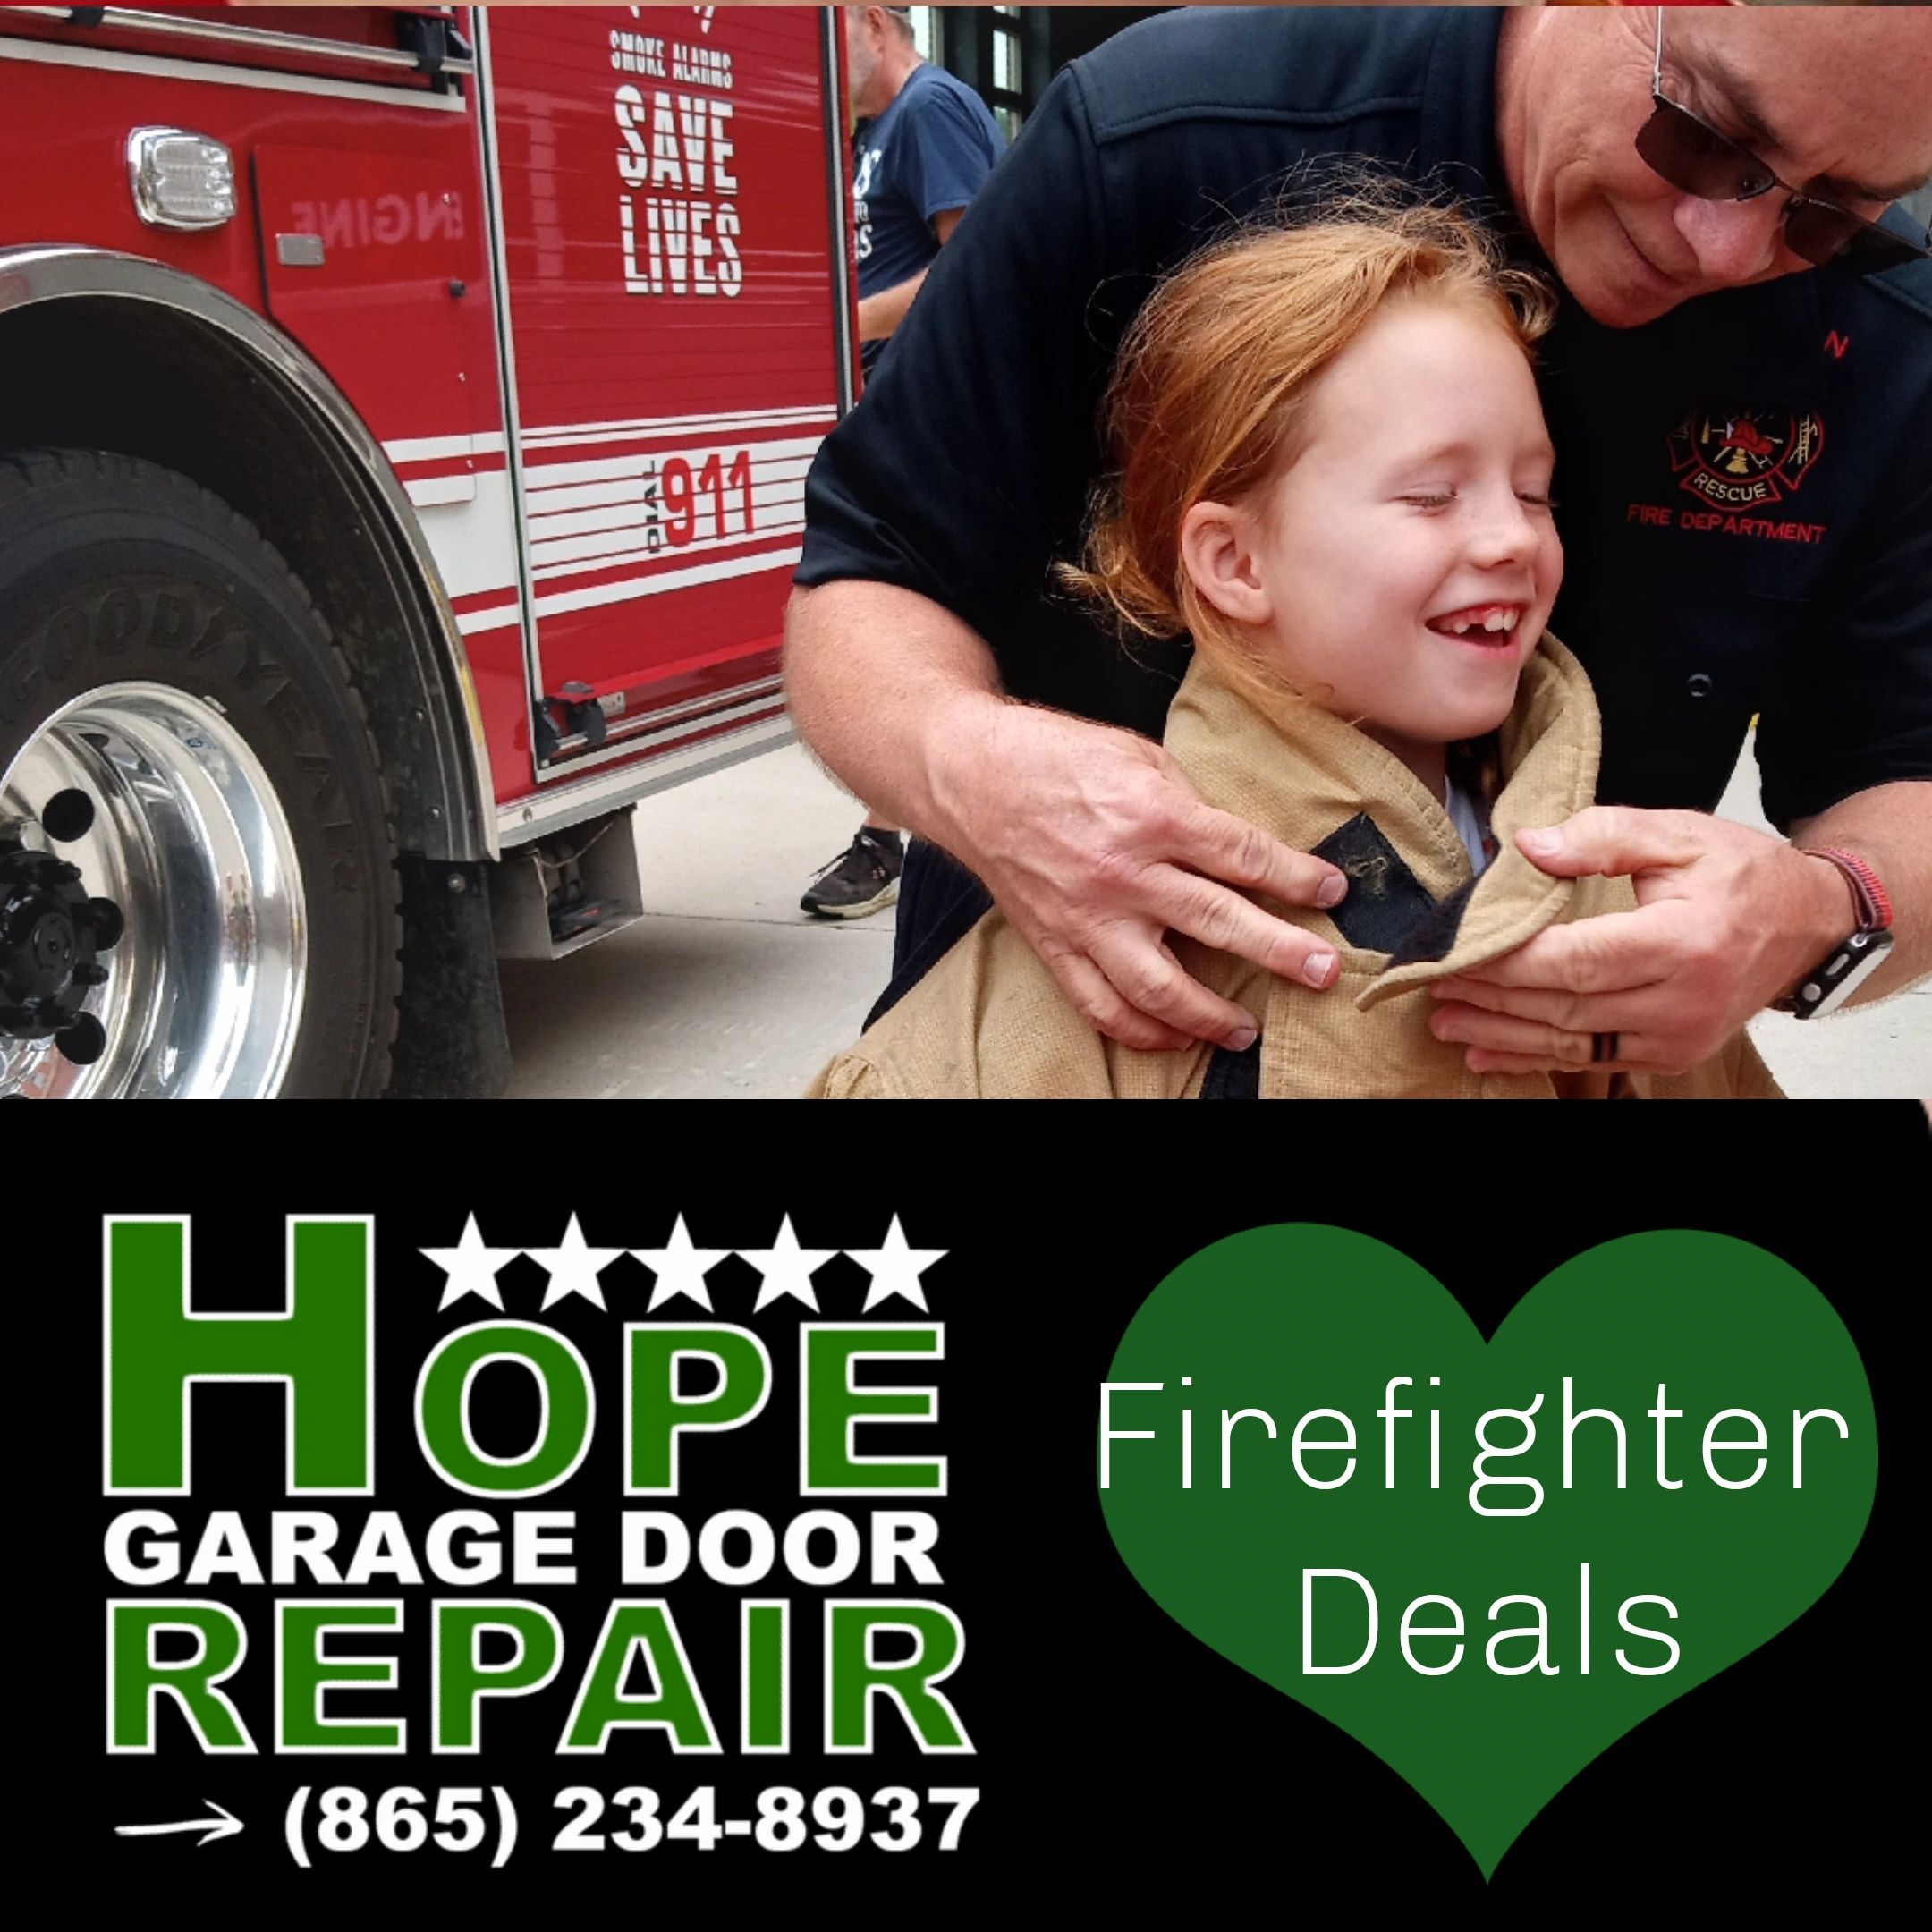 Firefighter Deals on garage door repair. From Hope Garage Door Repair